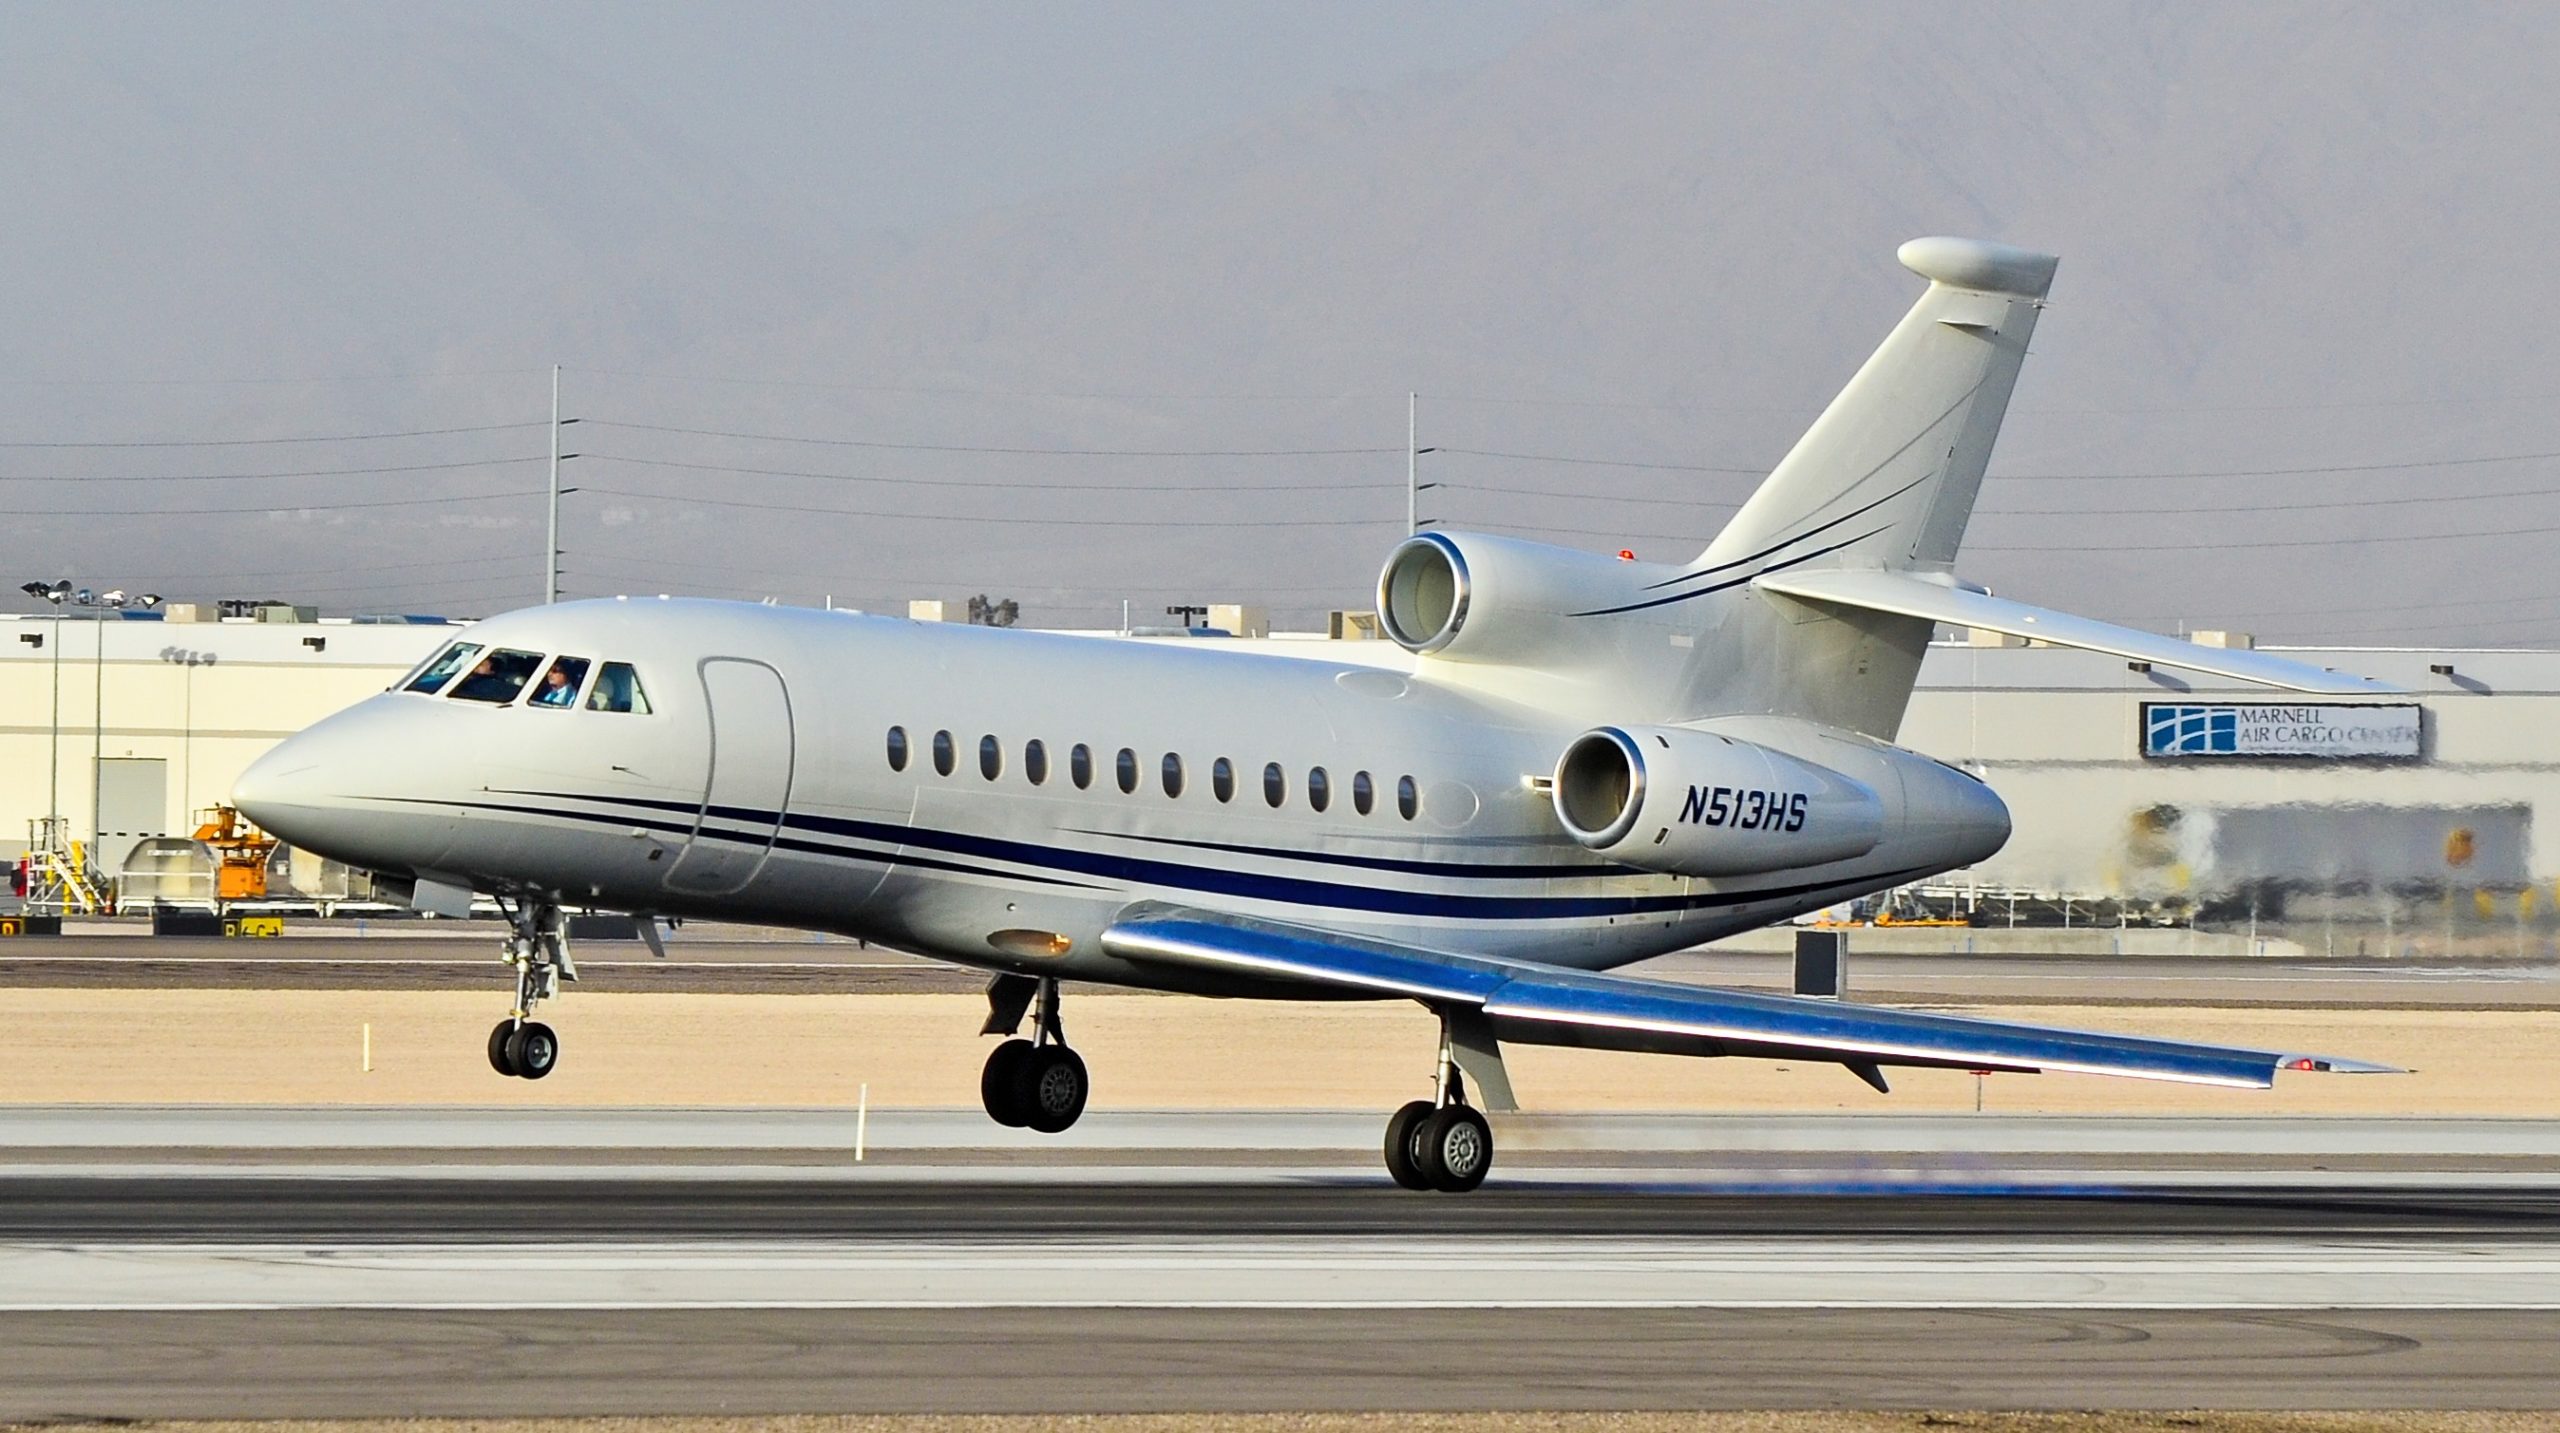 Jet privé Falcon 900LX au décollage